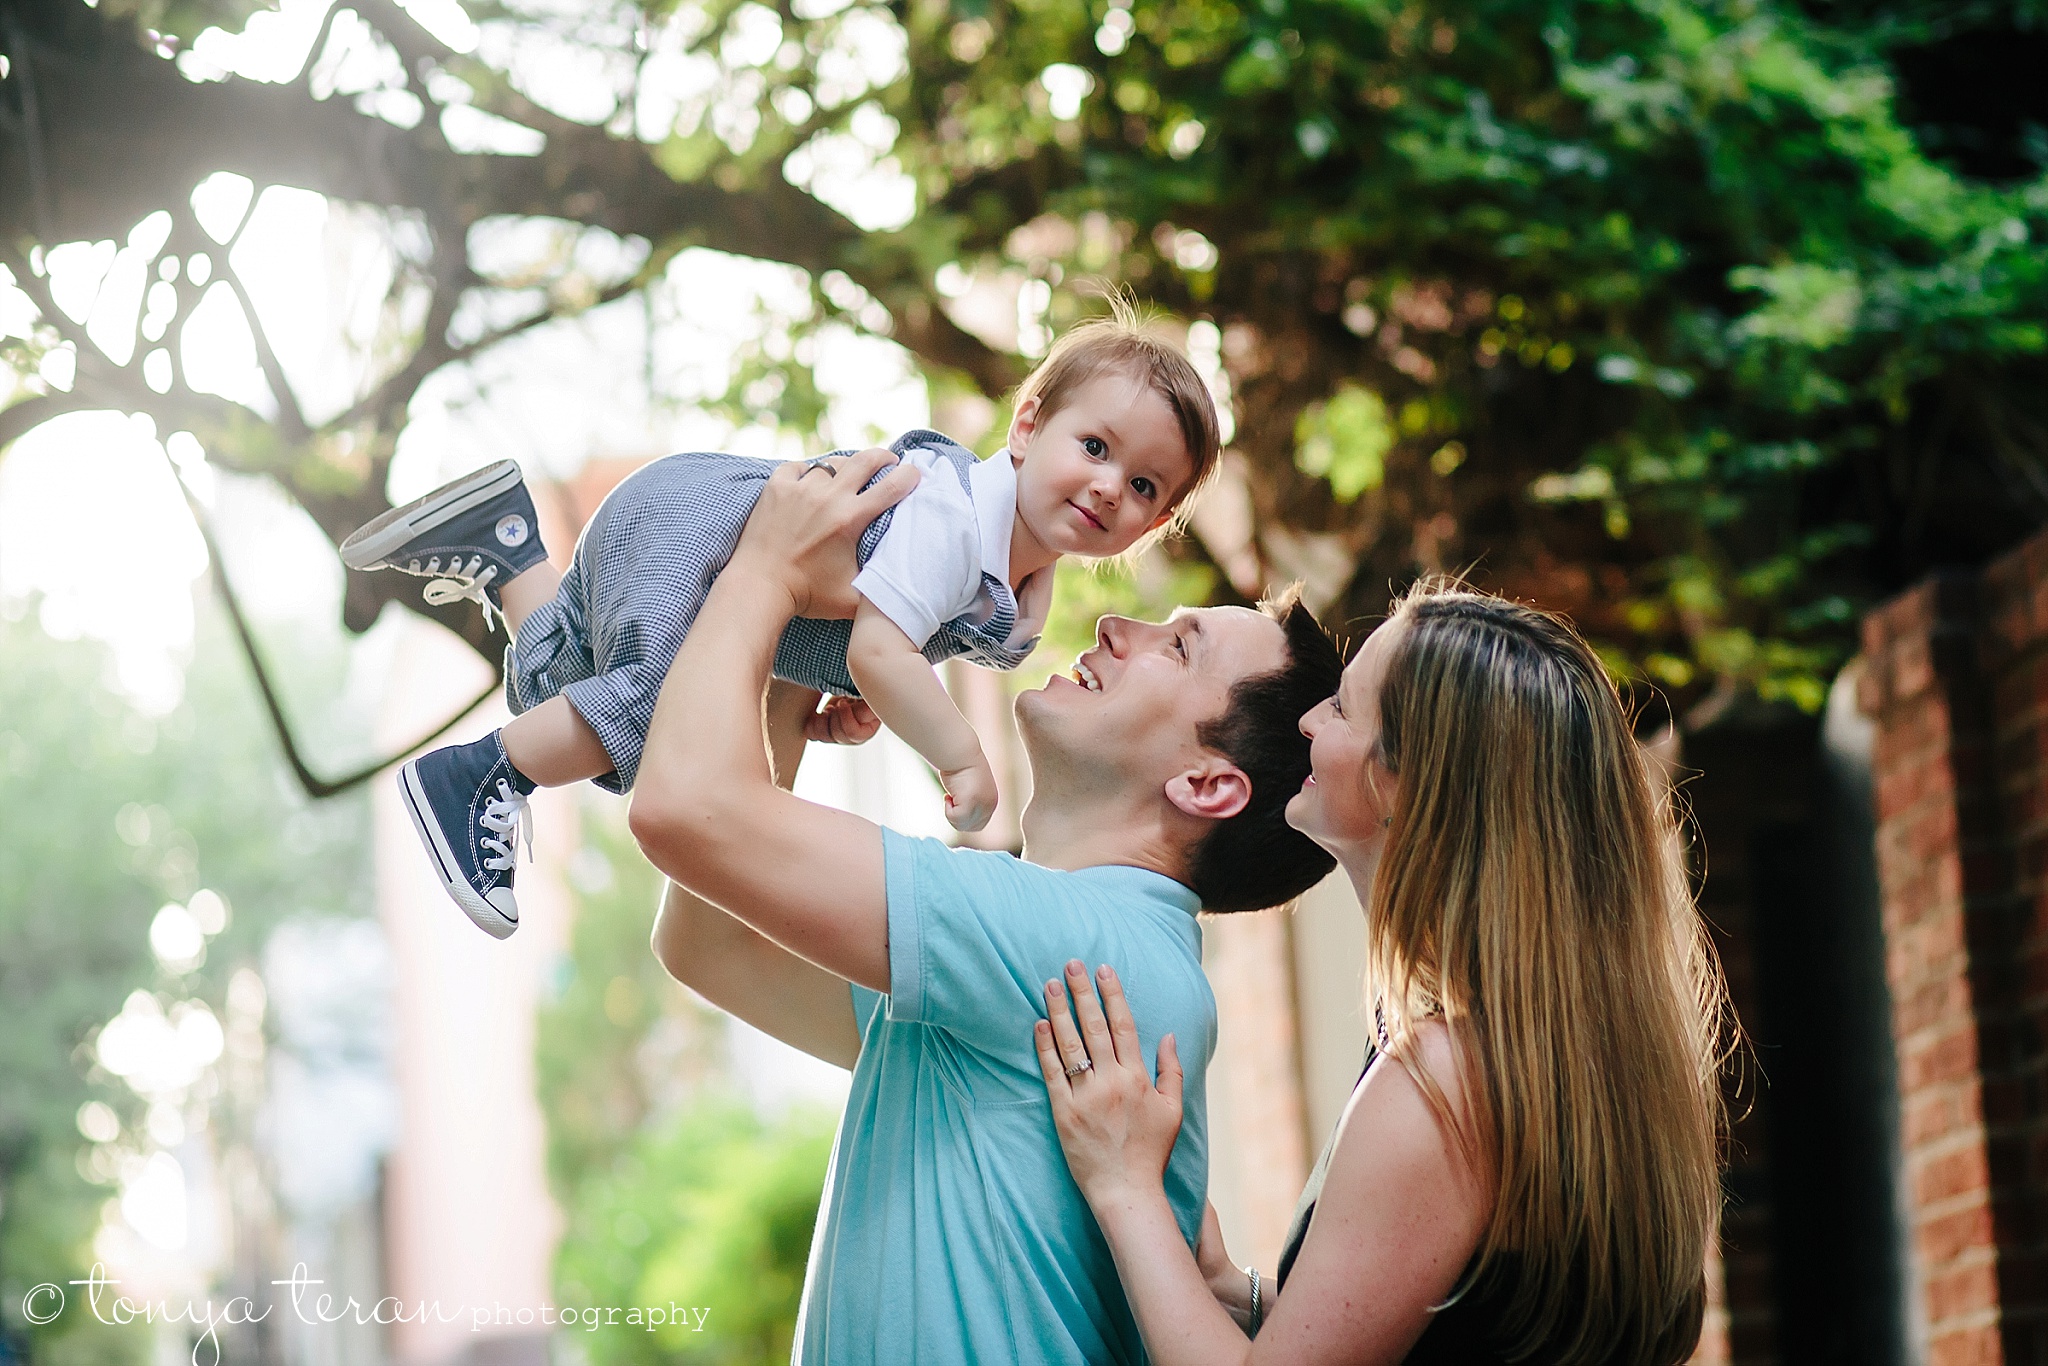 Outdoor Family Photo Session | Tonya Teran Photography, Alexandria, VA Newborn, Baby, and Family Photographer